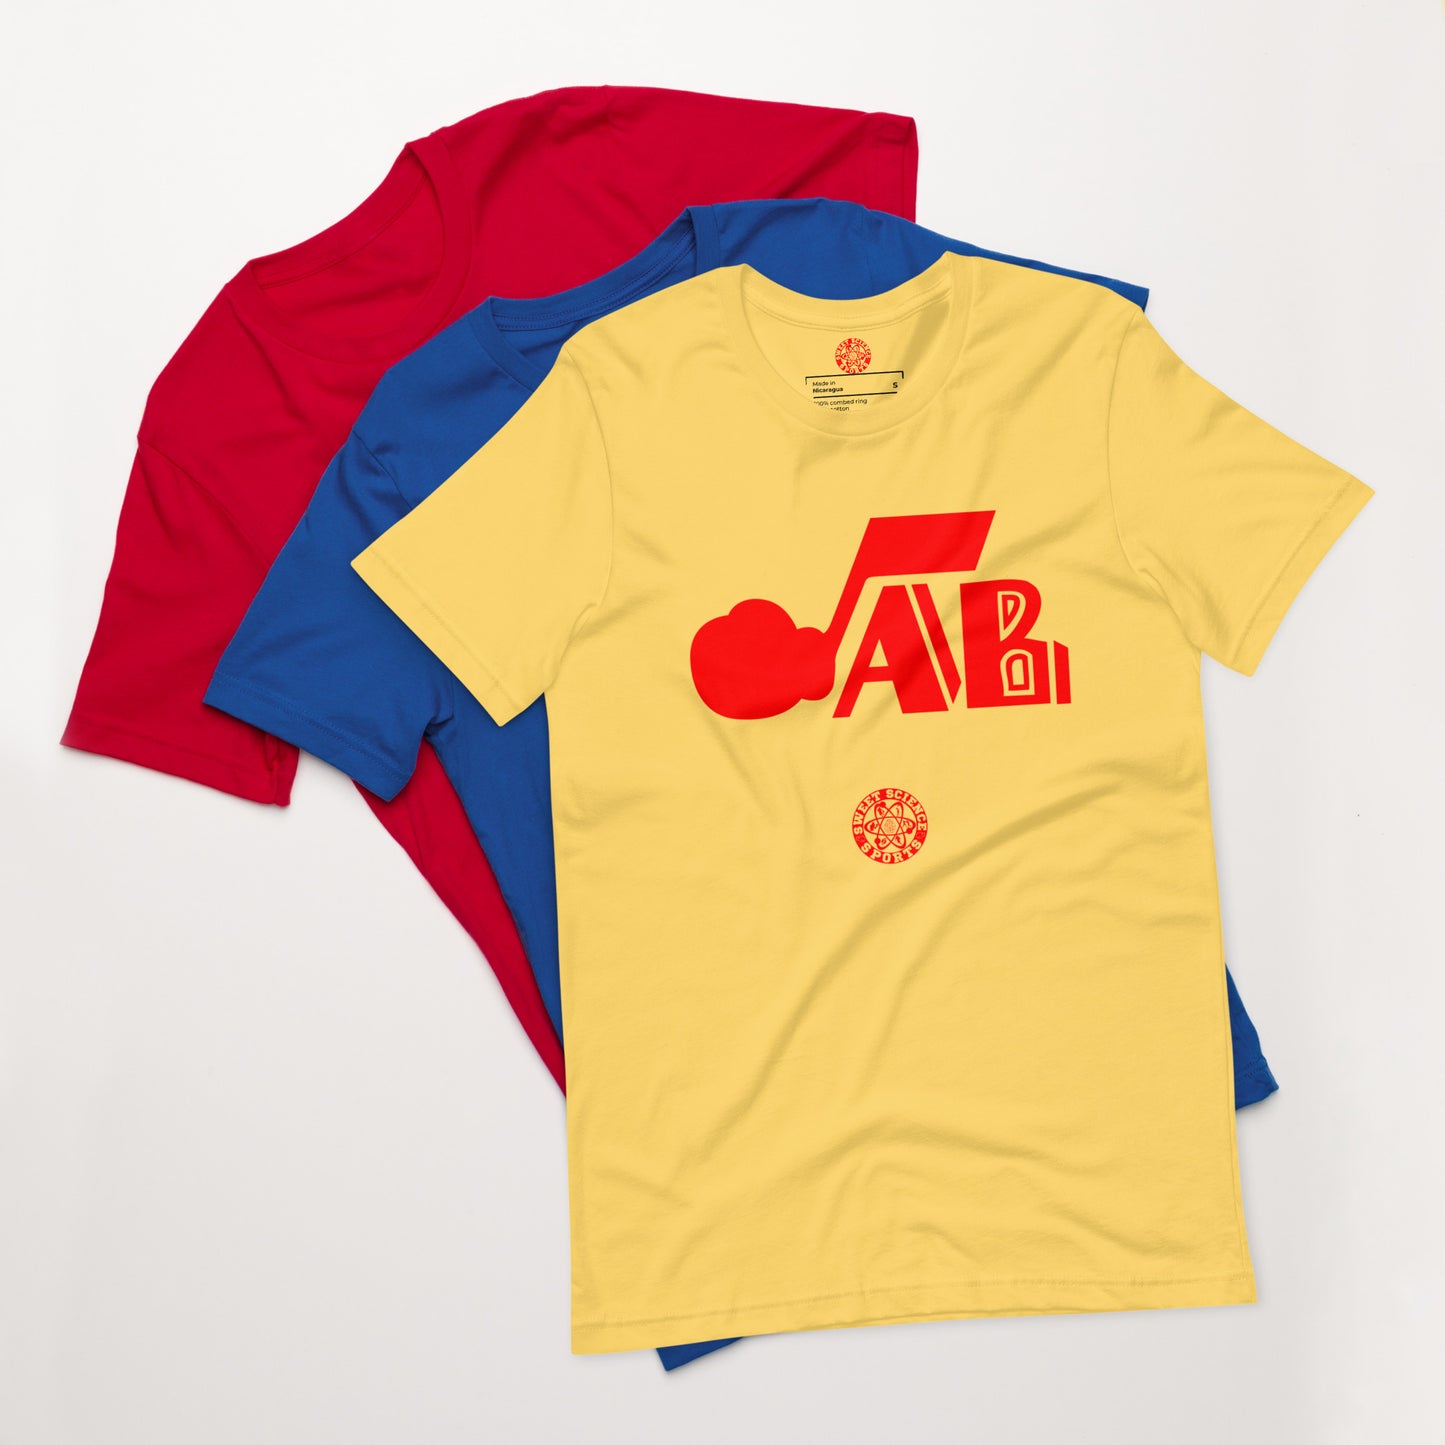 JAB t-shirt